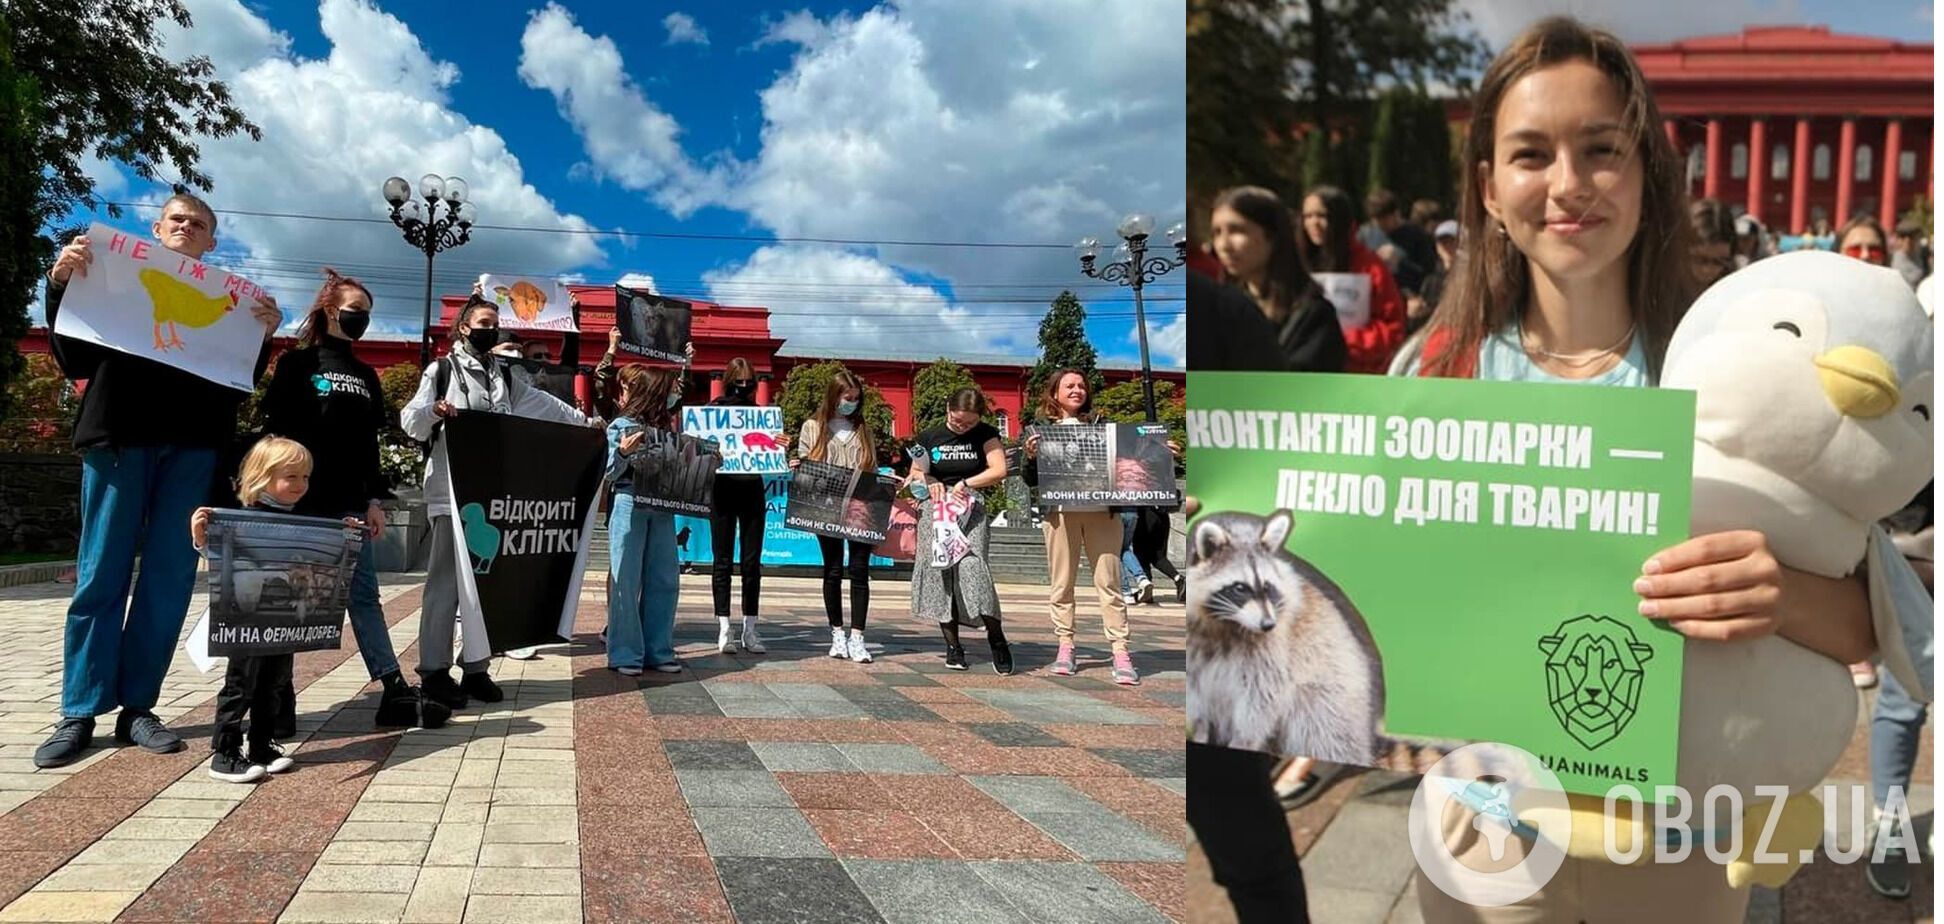 Всеукраинский Марш за права животных в Киеве